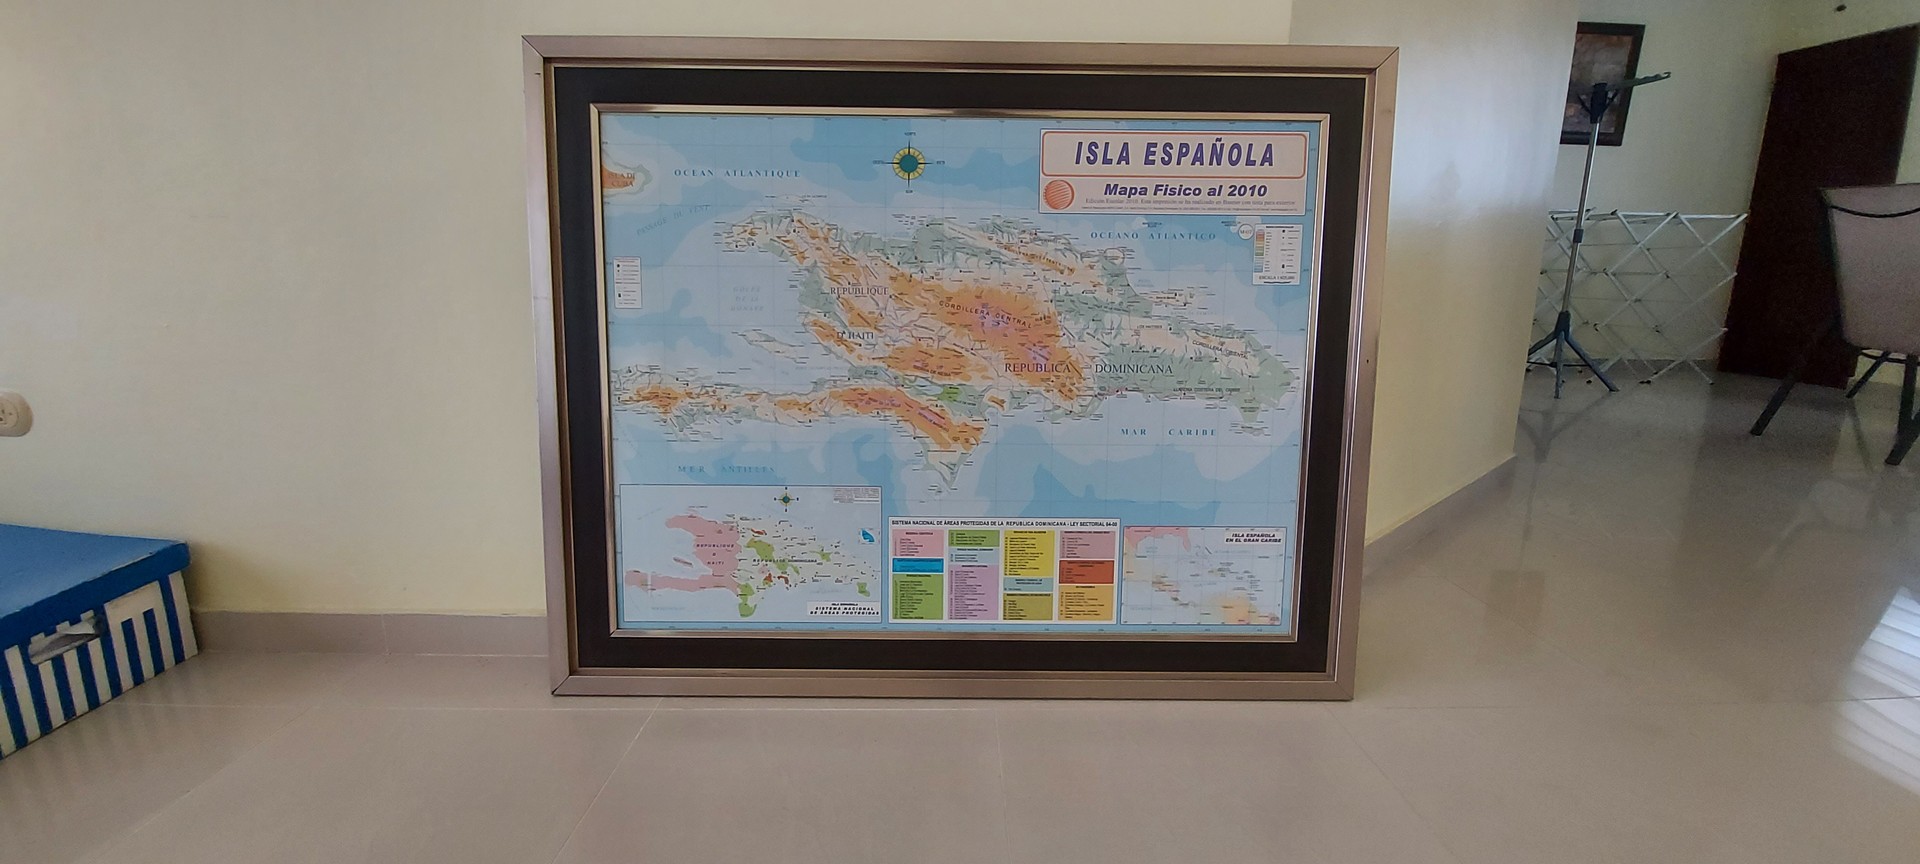 Cuadro mapa isla republica dominicana